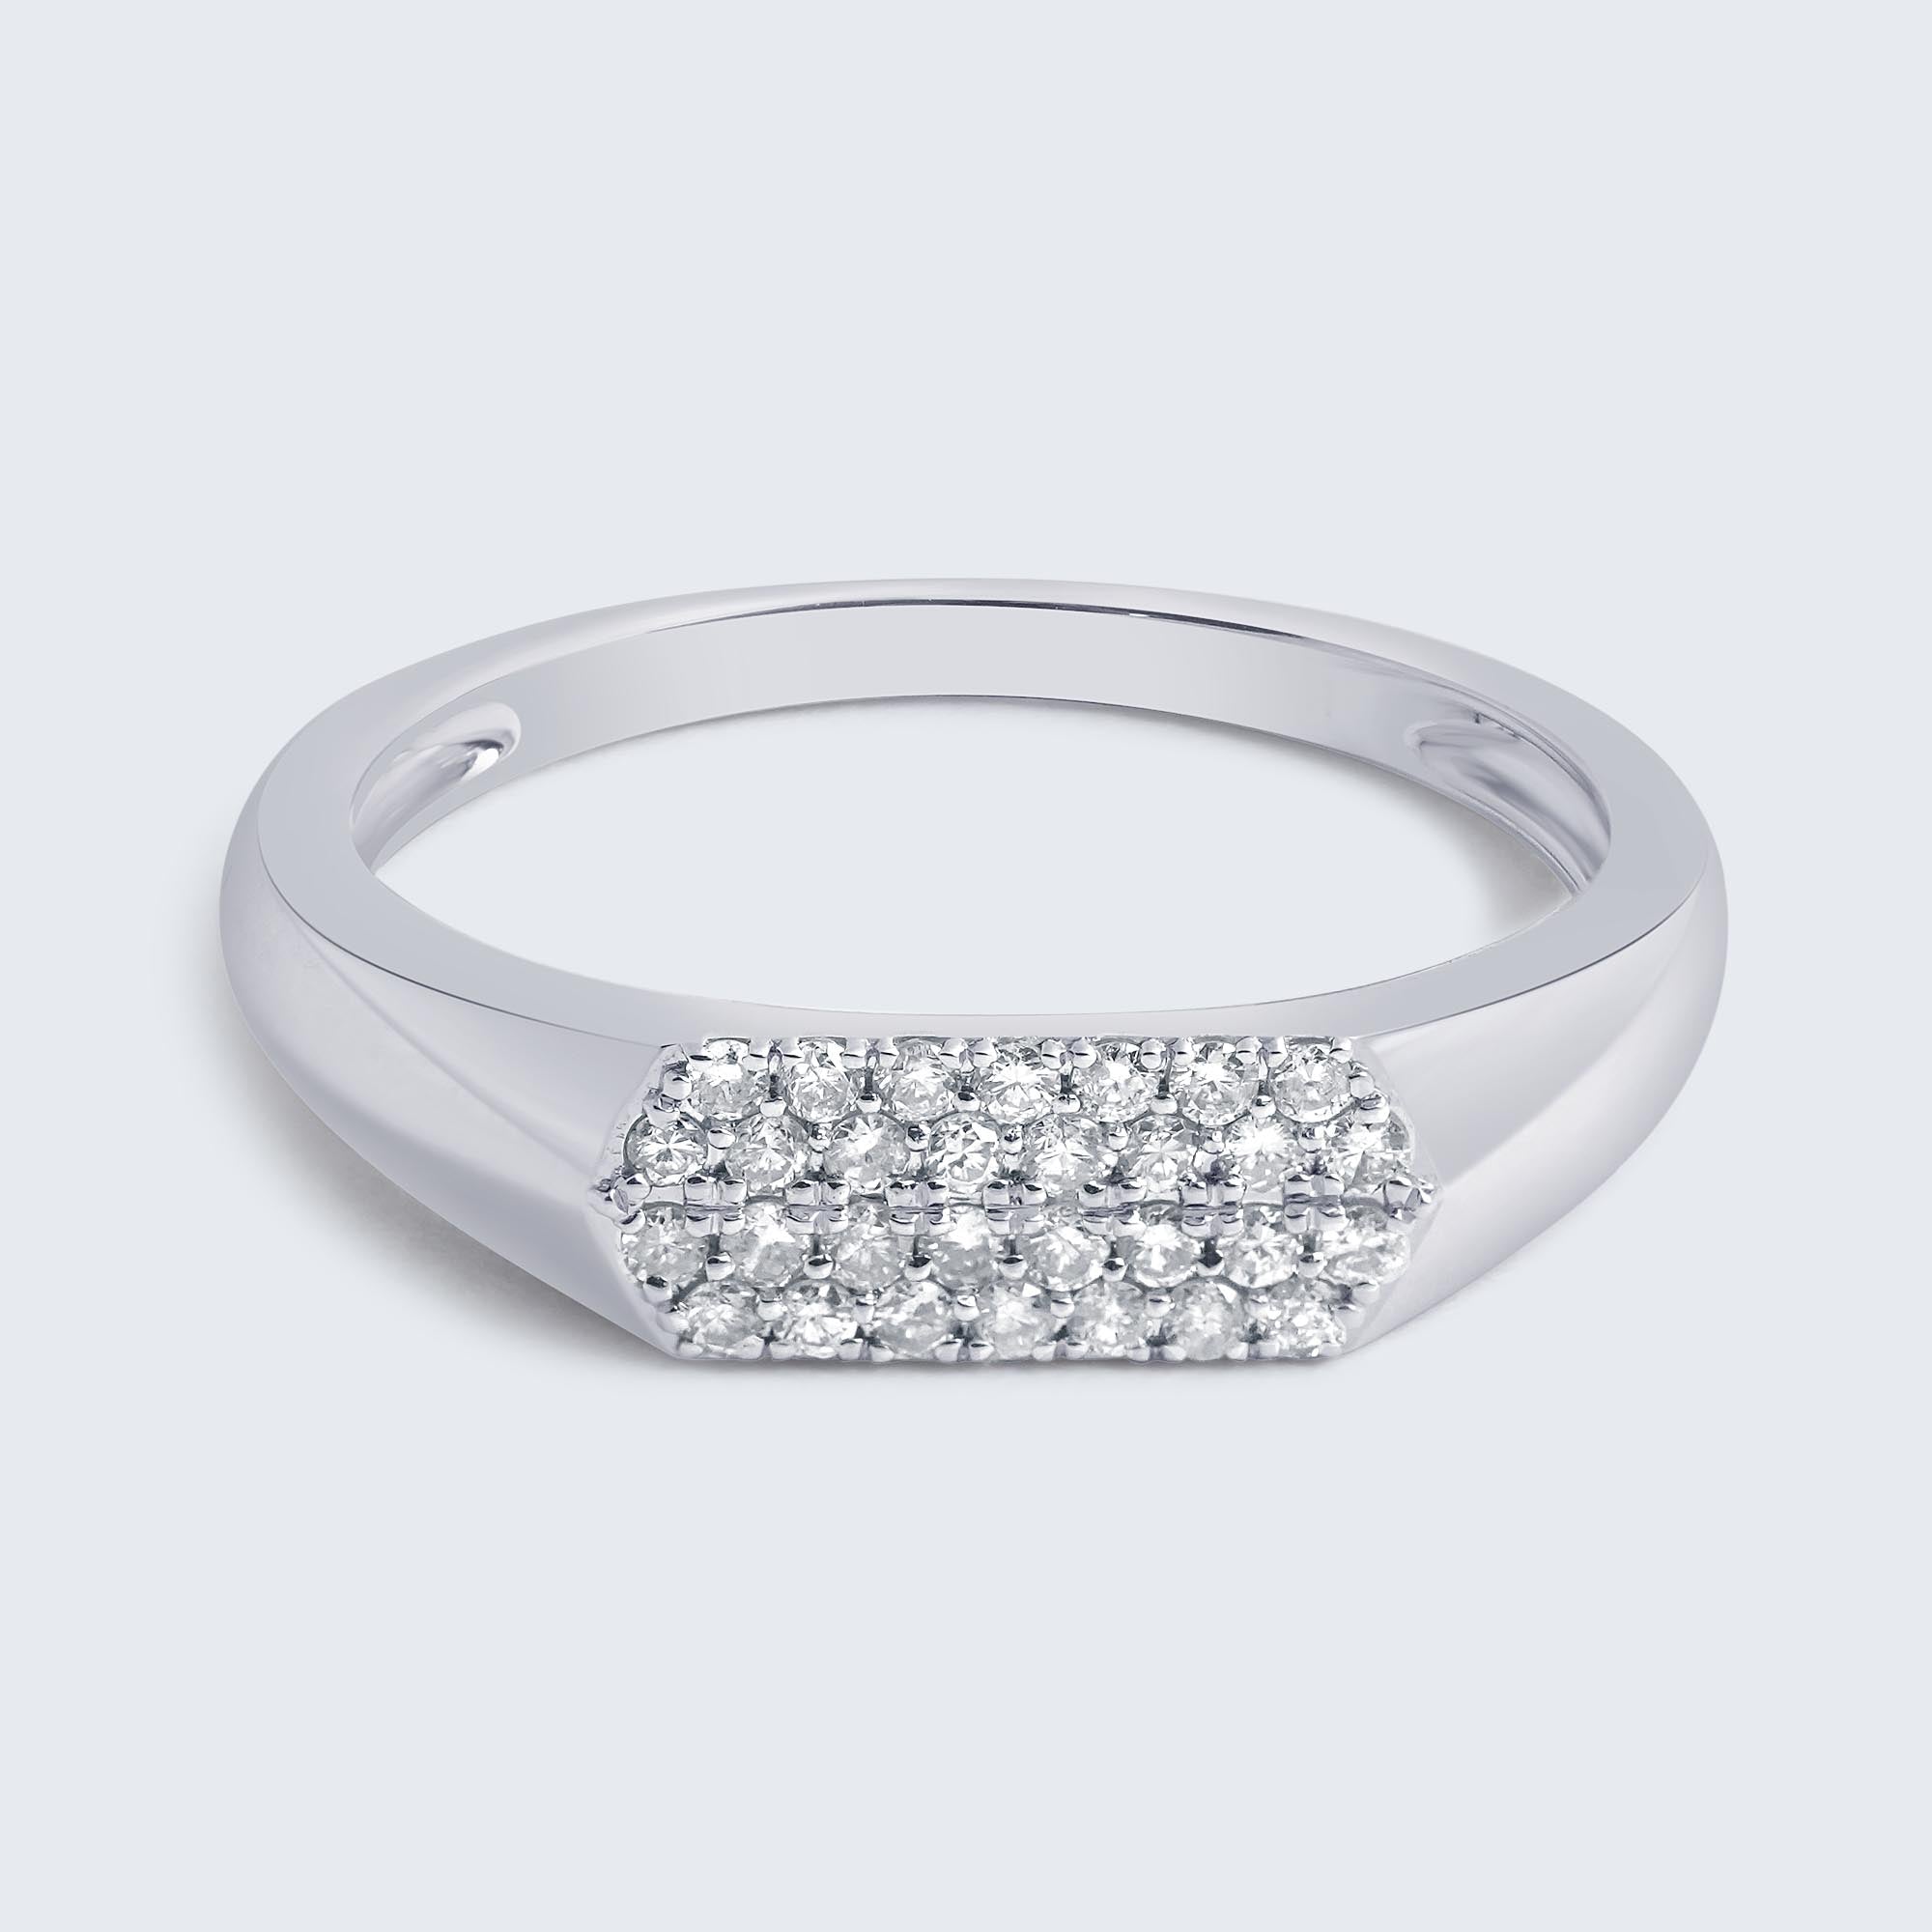 K18wg 天然ダイヤモンド 0.41ct パヴェ リングリング(指輪)